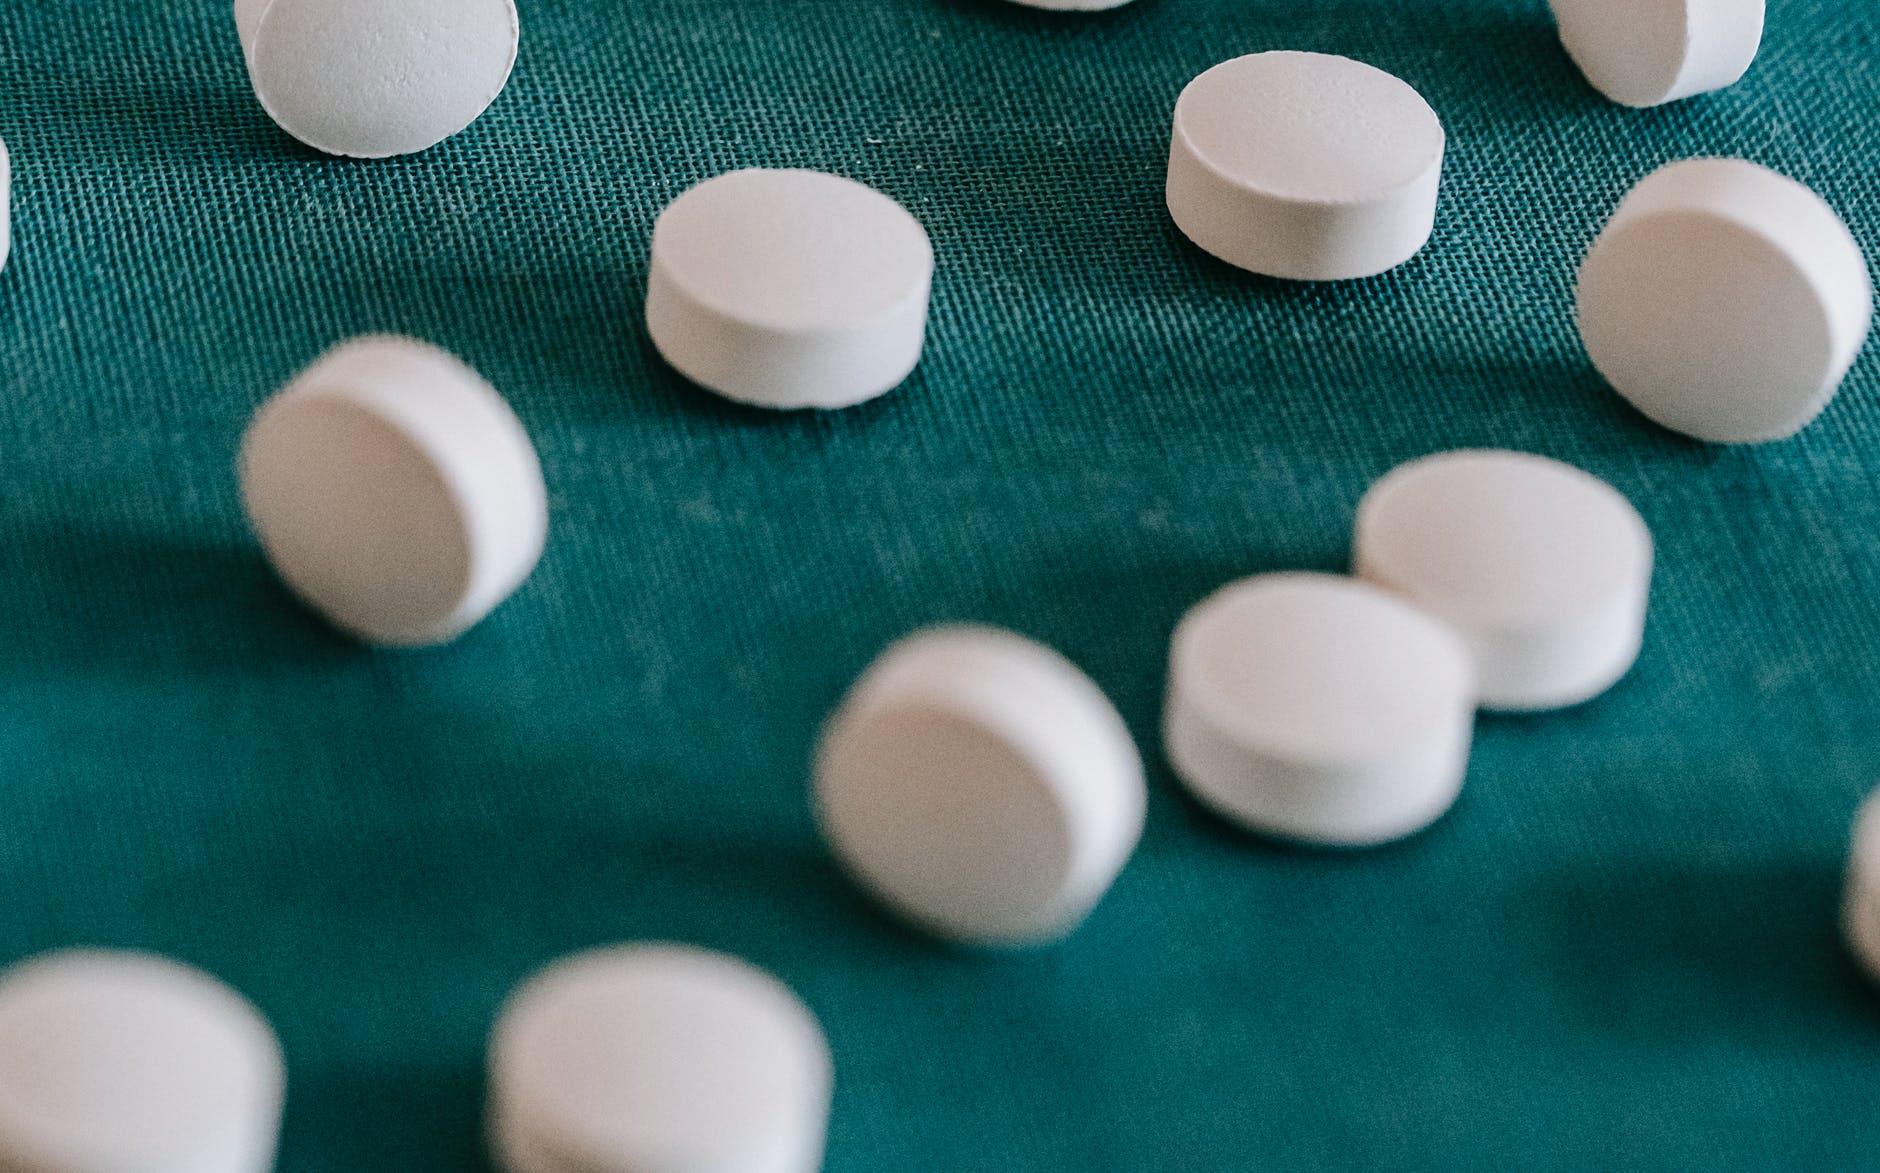 pile of white spilled pills